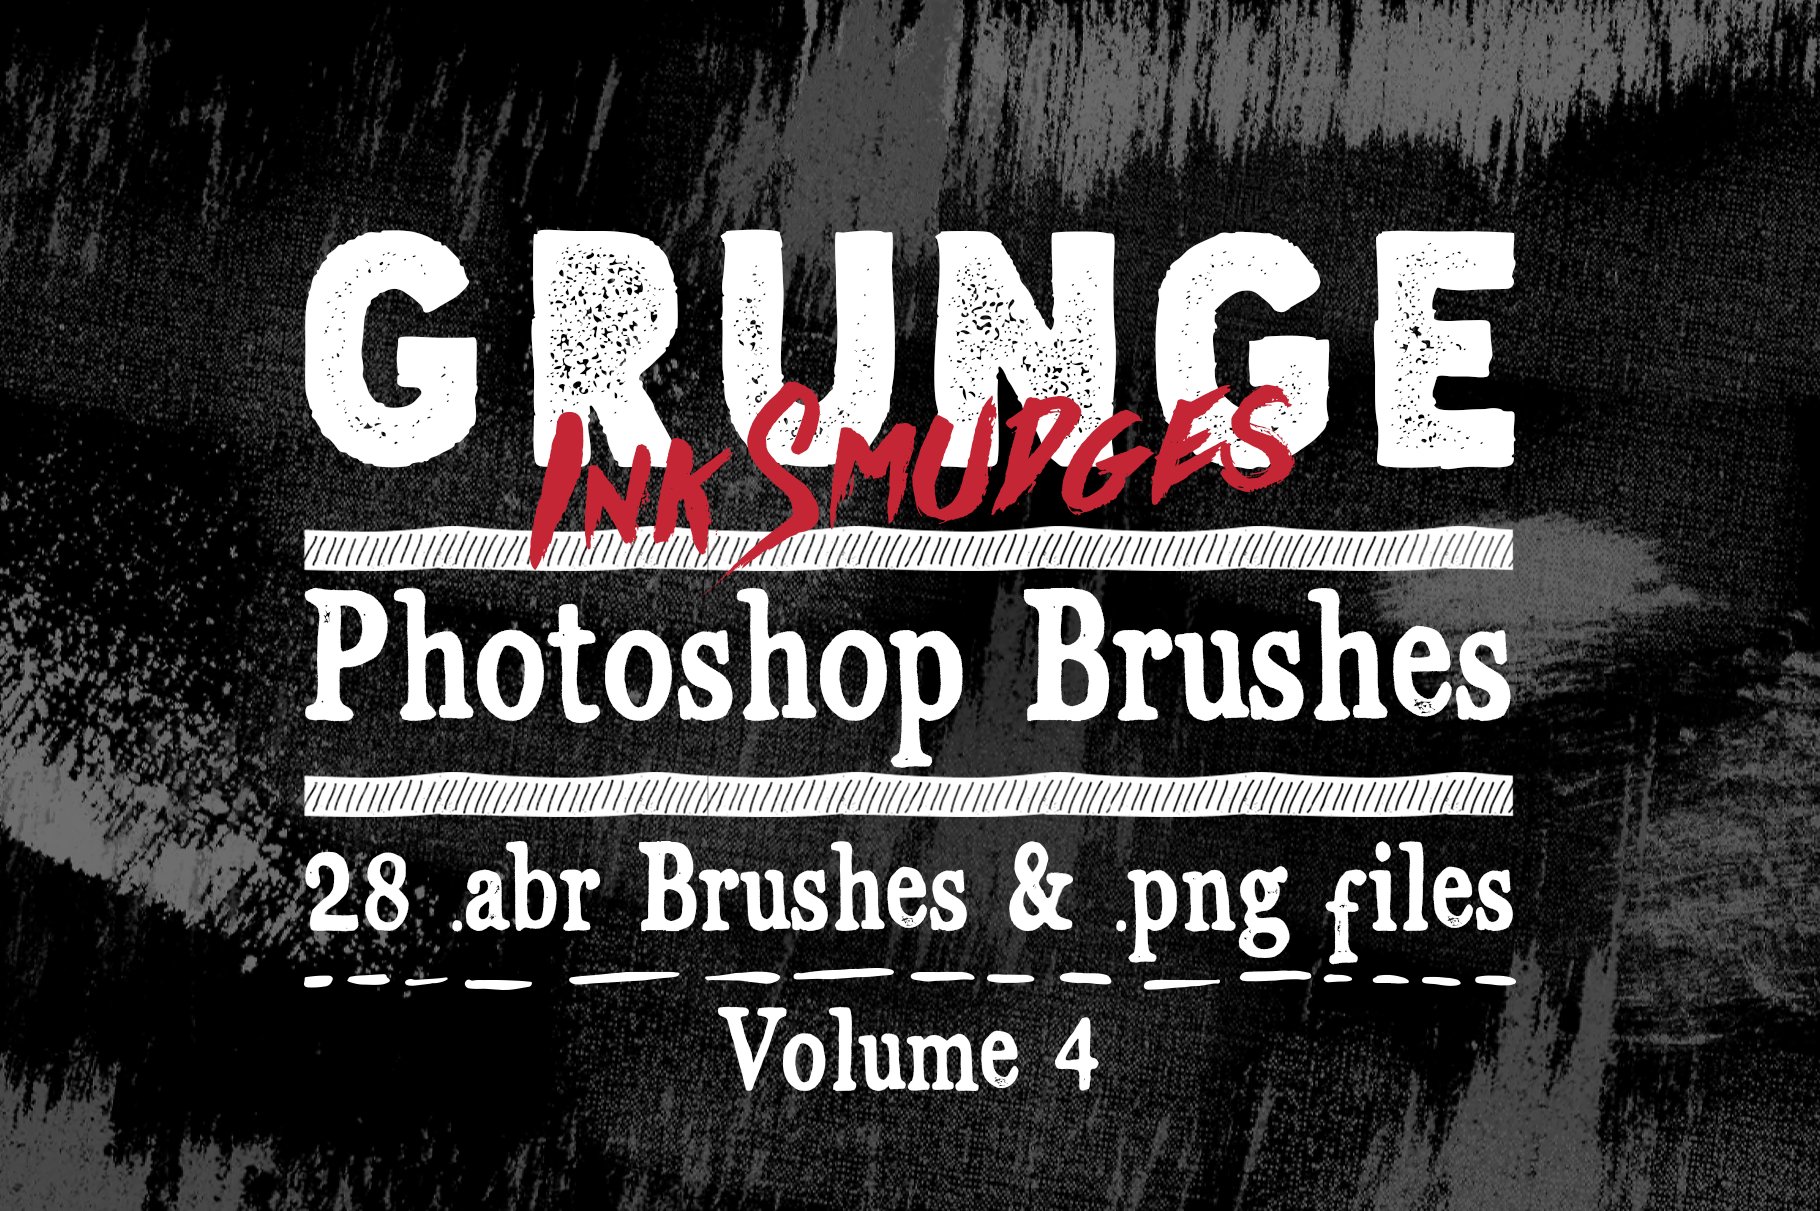 Grunge Ink Photoshop Brushes V4cover image.